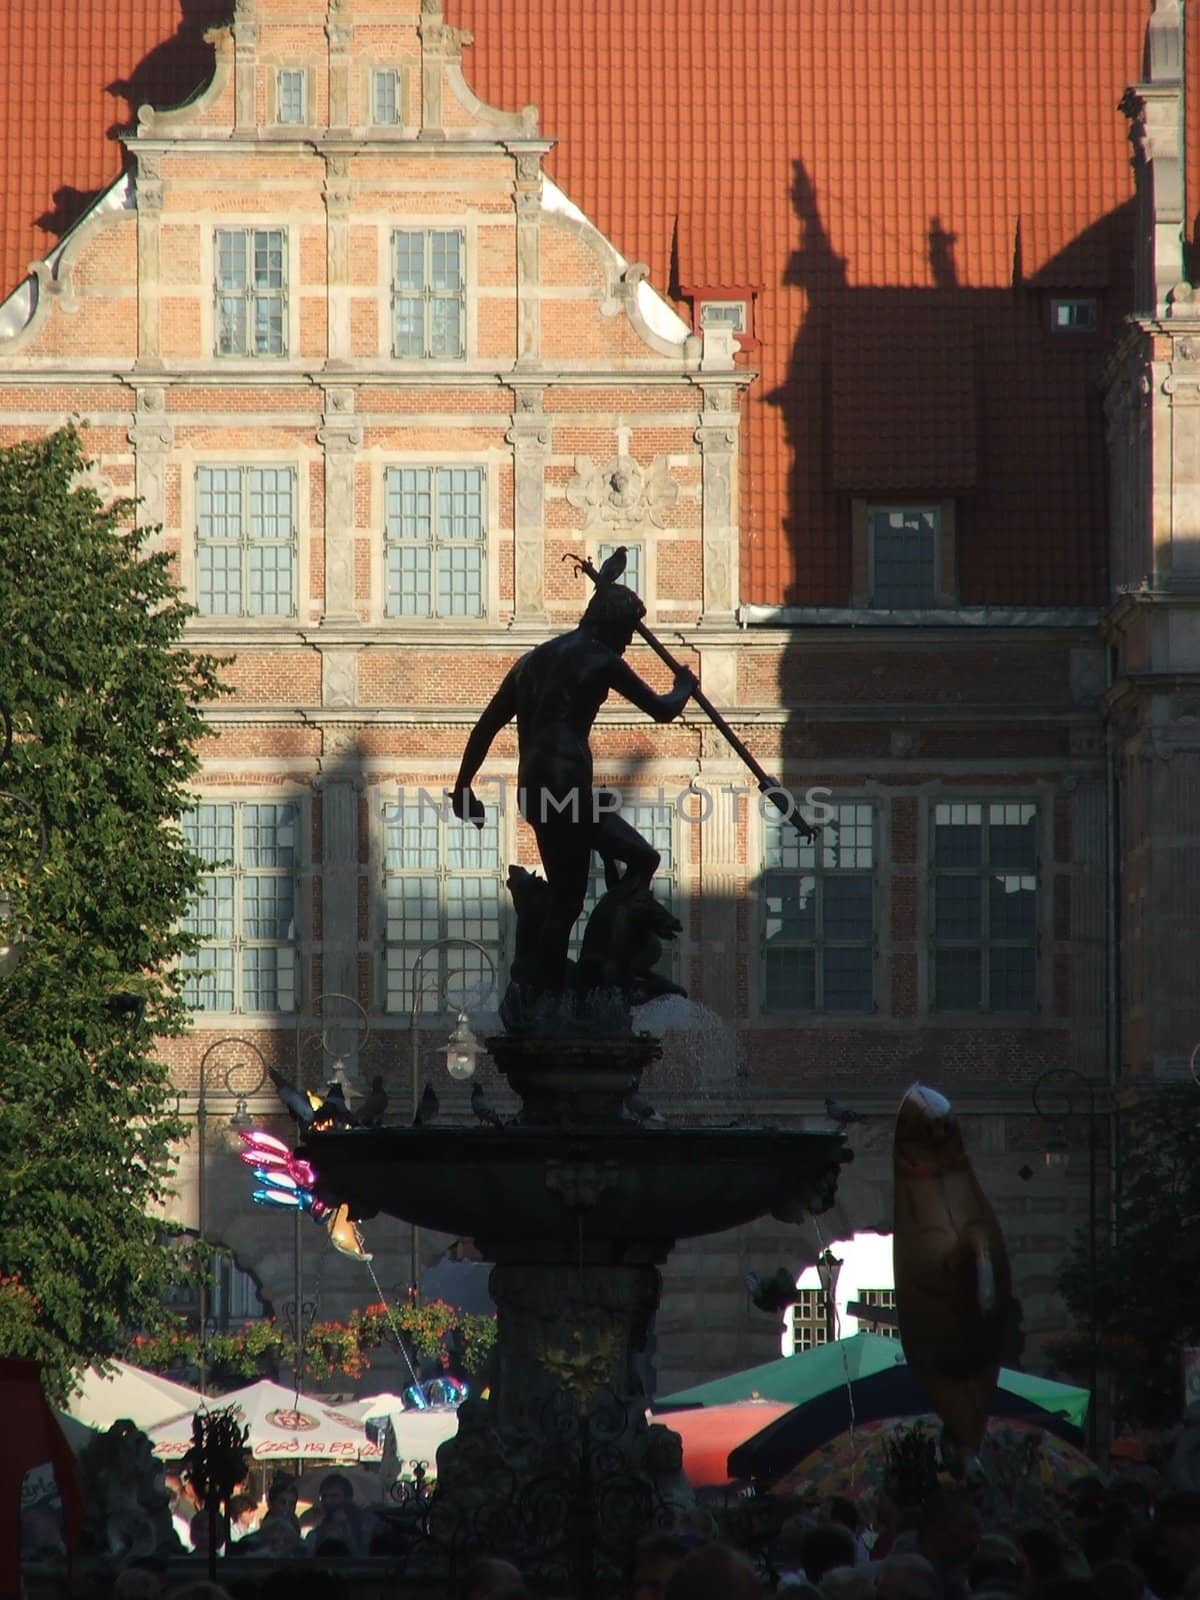 Gdansk - Danzig by verbano